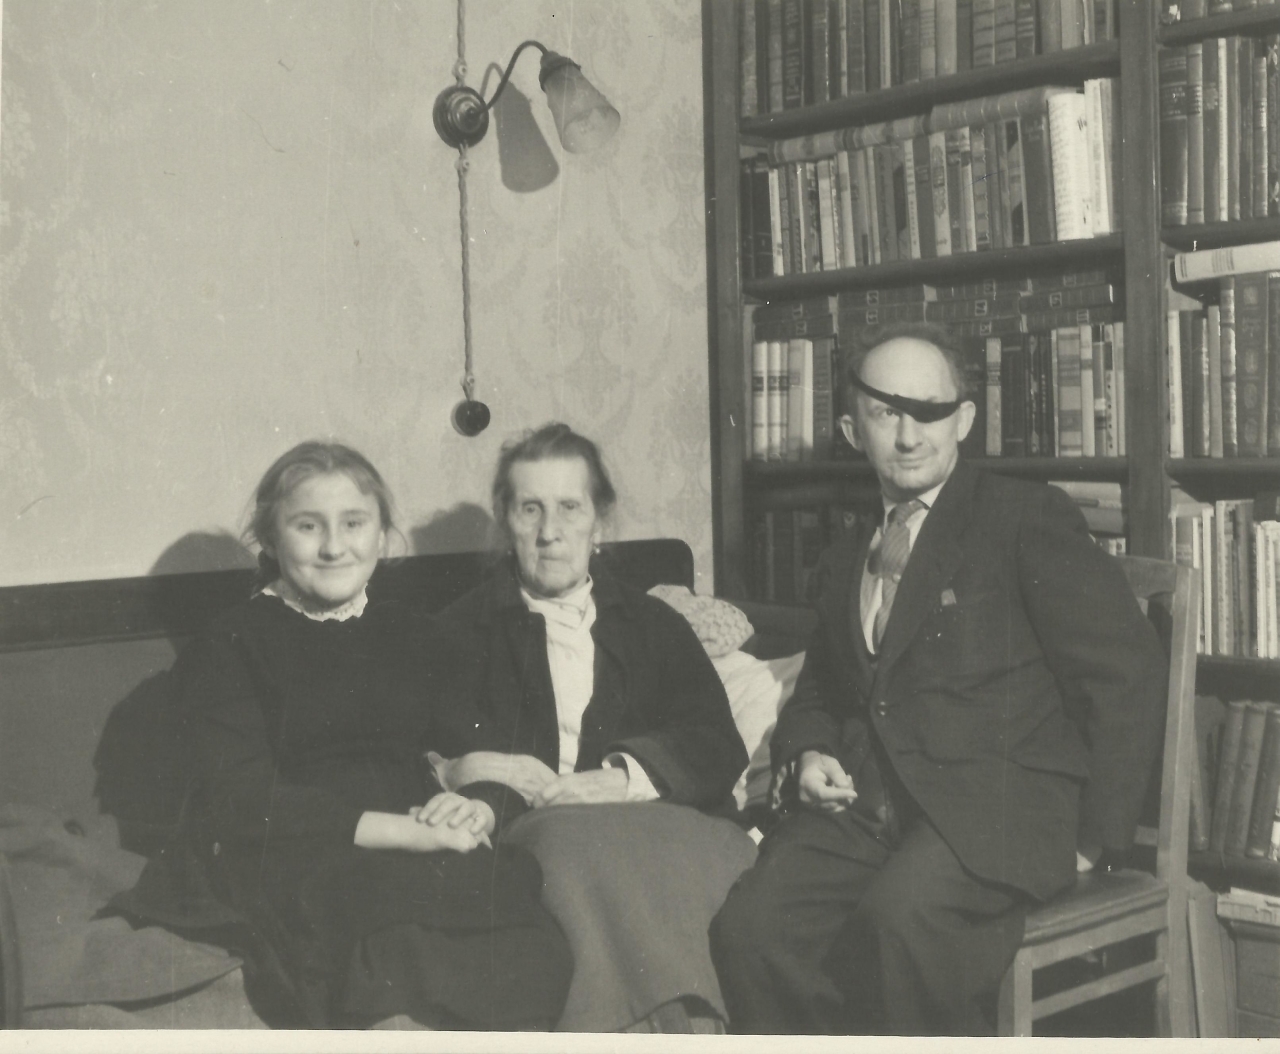 Օլգա Մանդրիկան հոր  և տատիկի  հետ